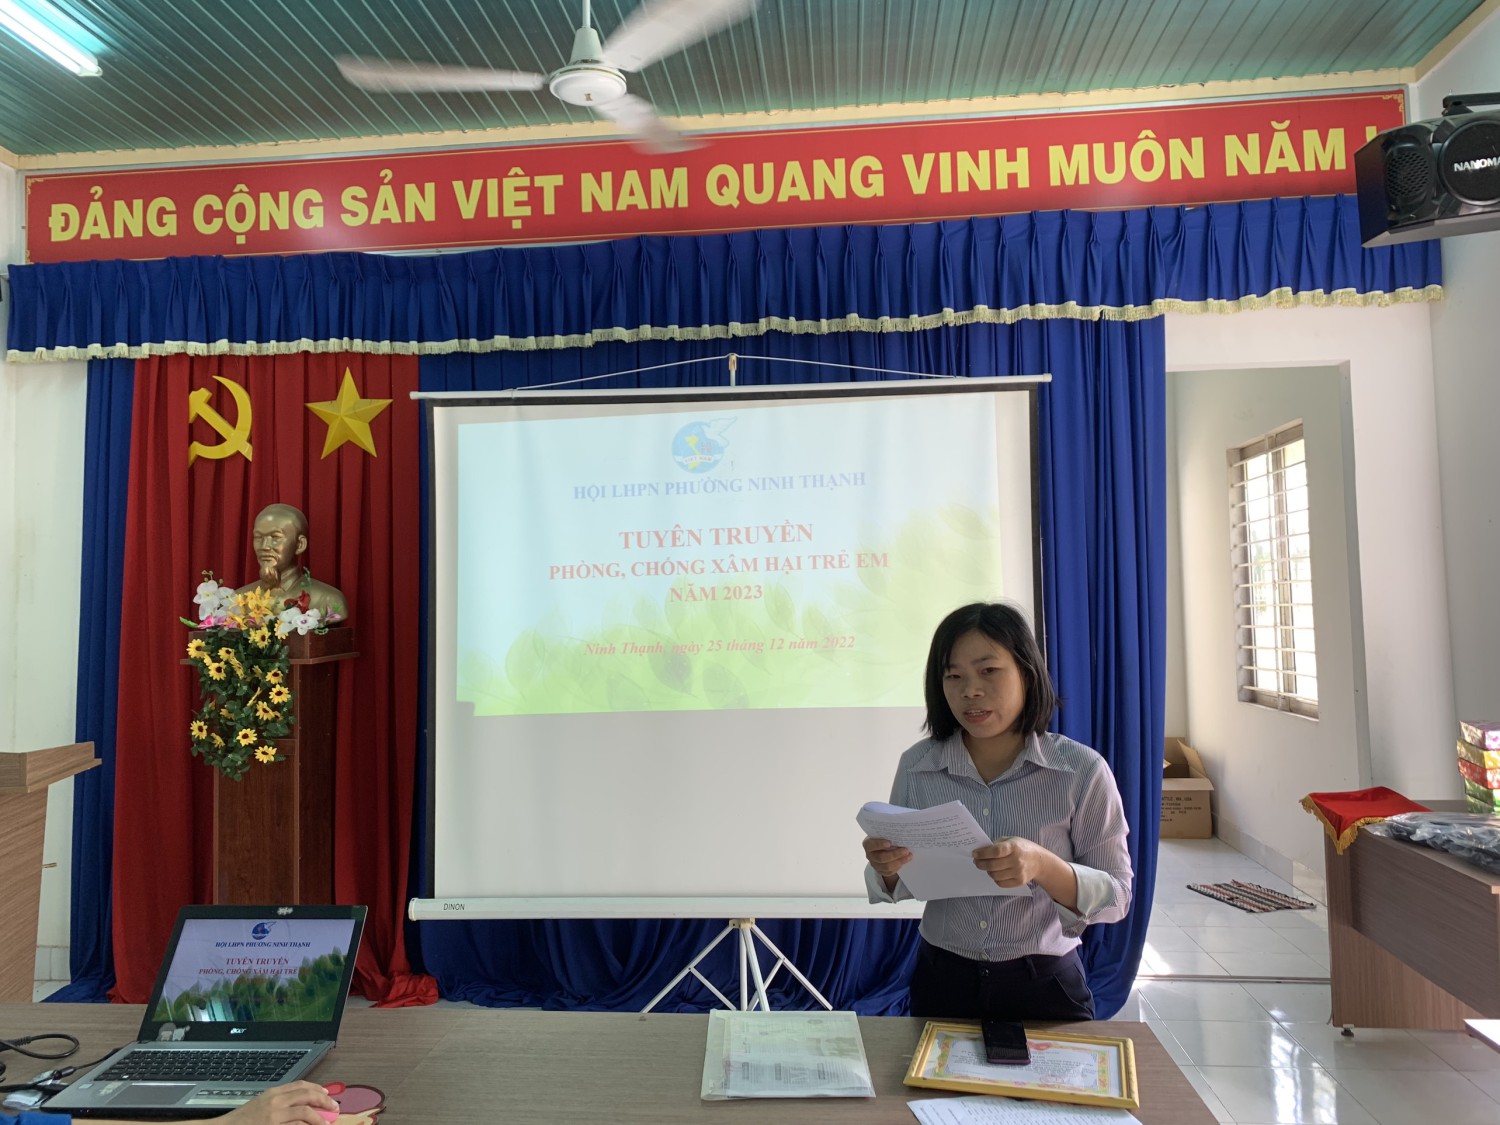 Hội LHPN phường Ninh Thạnh tổ chức tuyên truyền phòng tránh bạo lực và xâm hại trẻ em cho các em học sinh và các chị em hội viên trên địa bàn phường